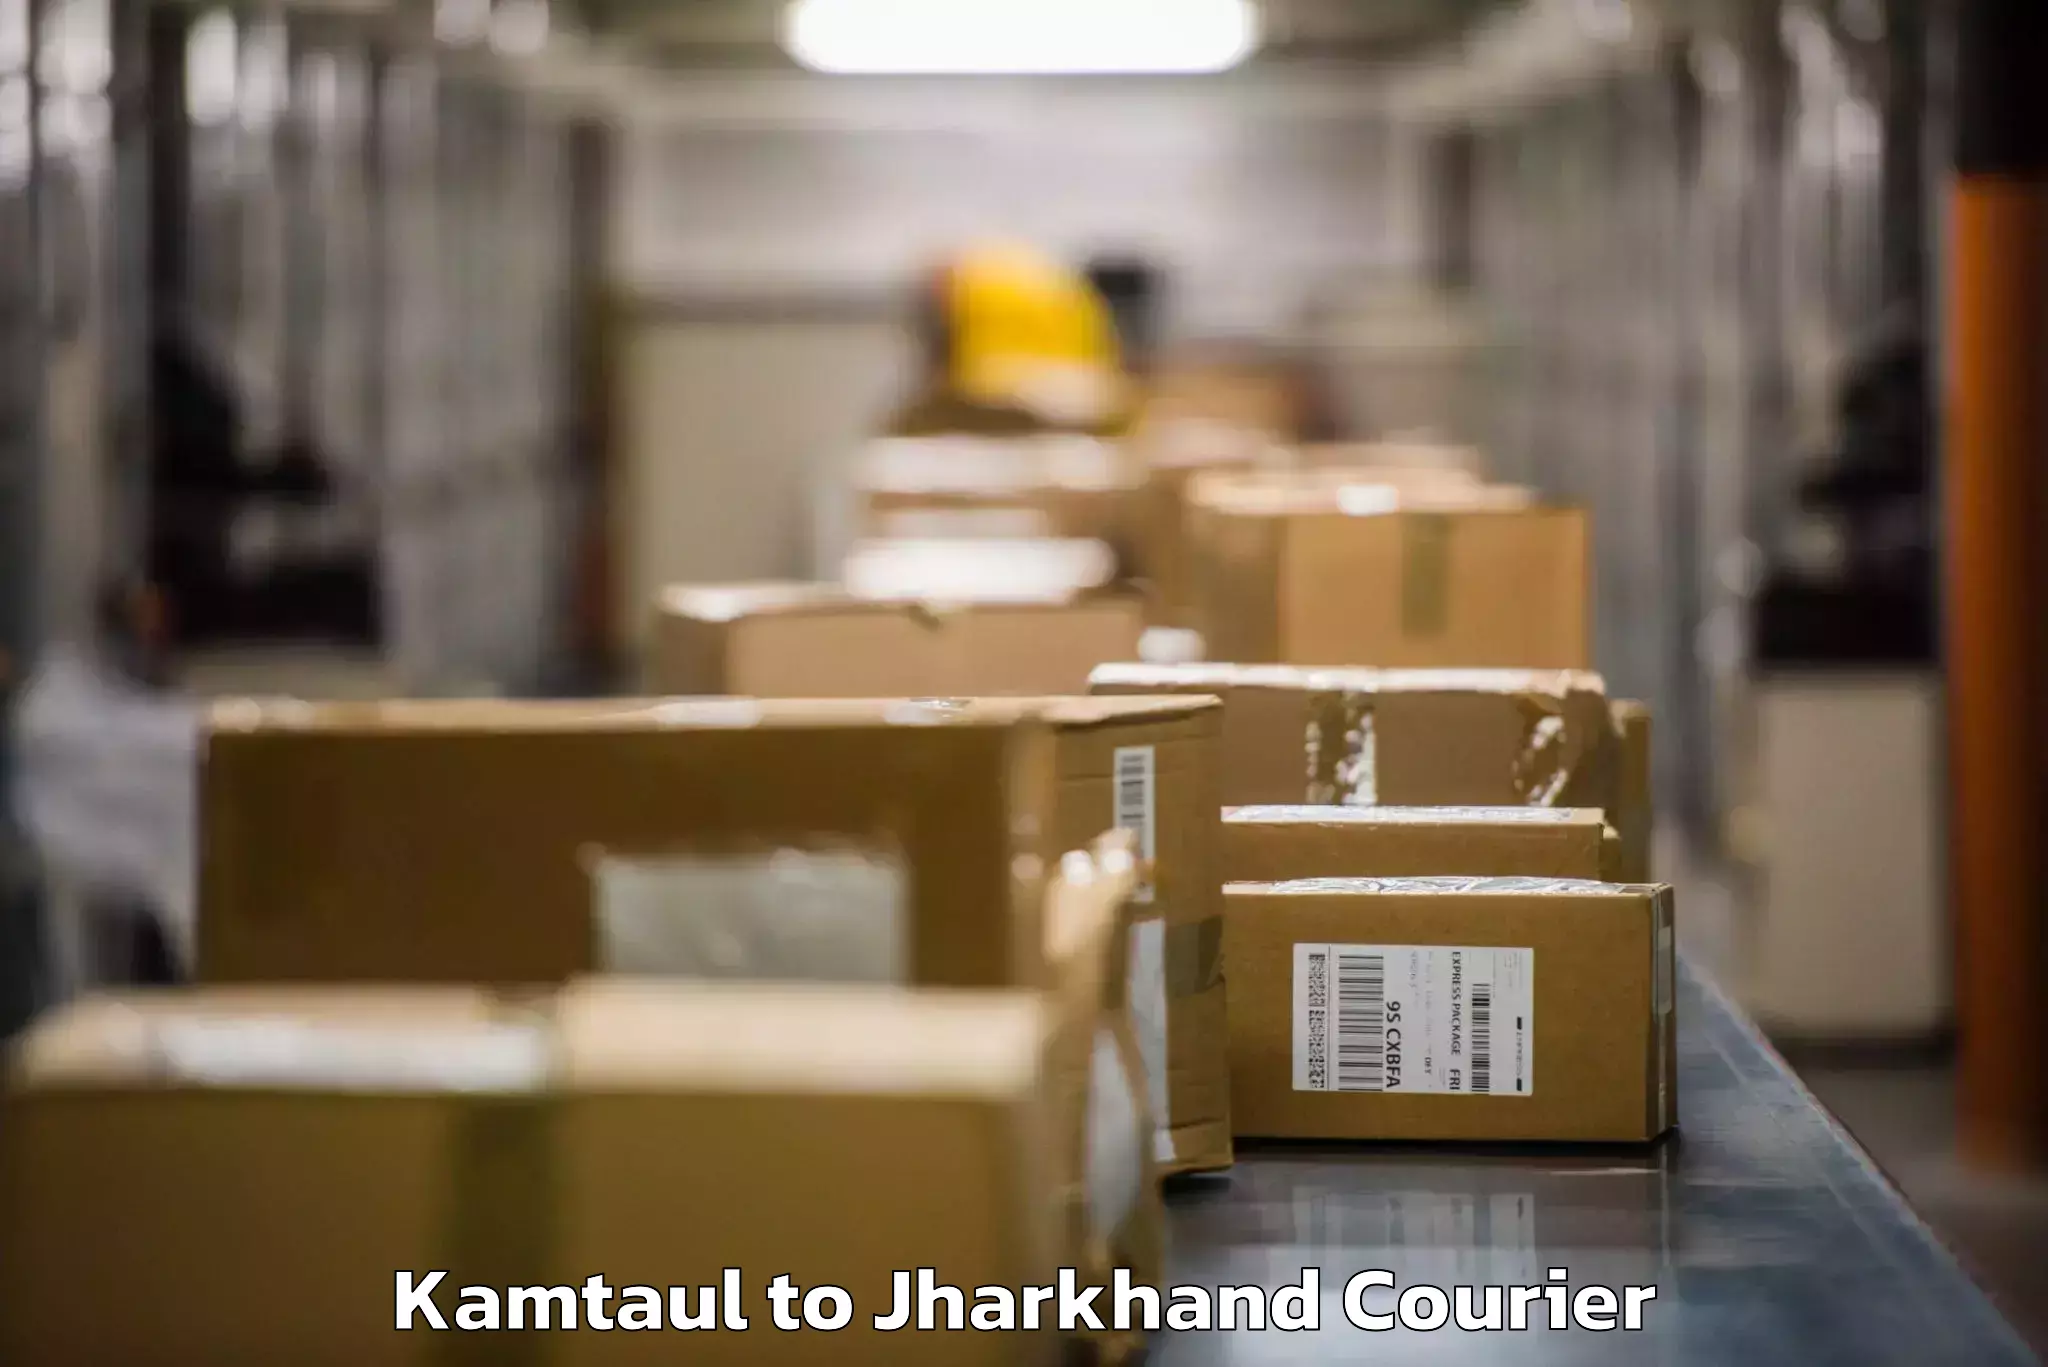 Baggage shipping advice Kamtaul to Ranchi